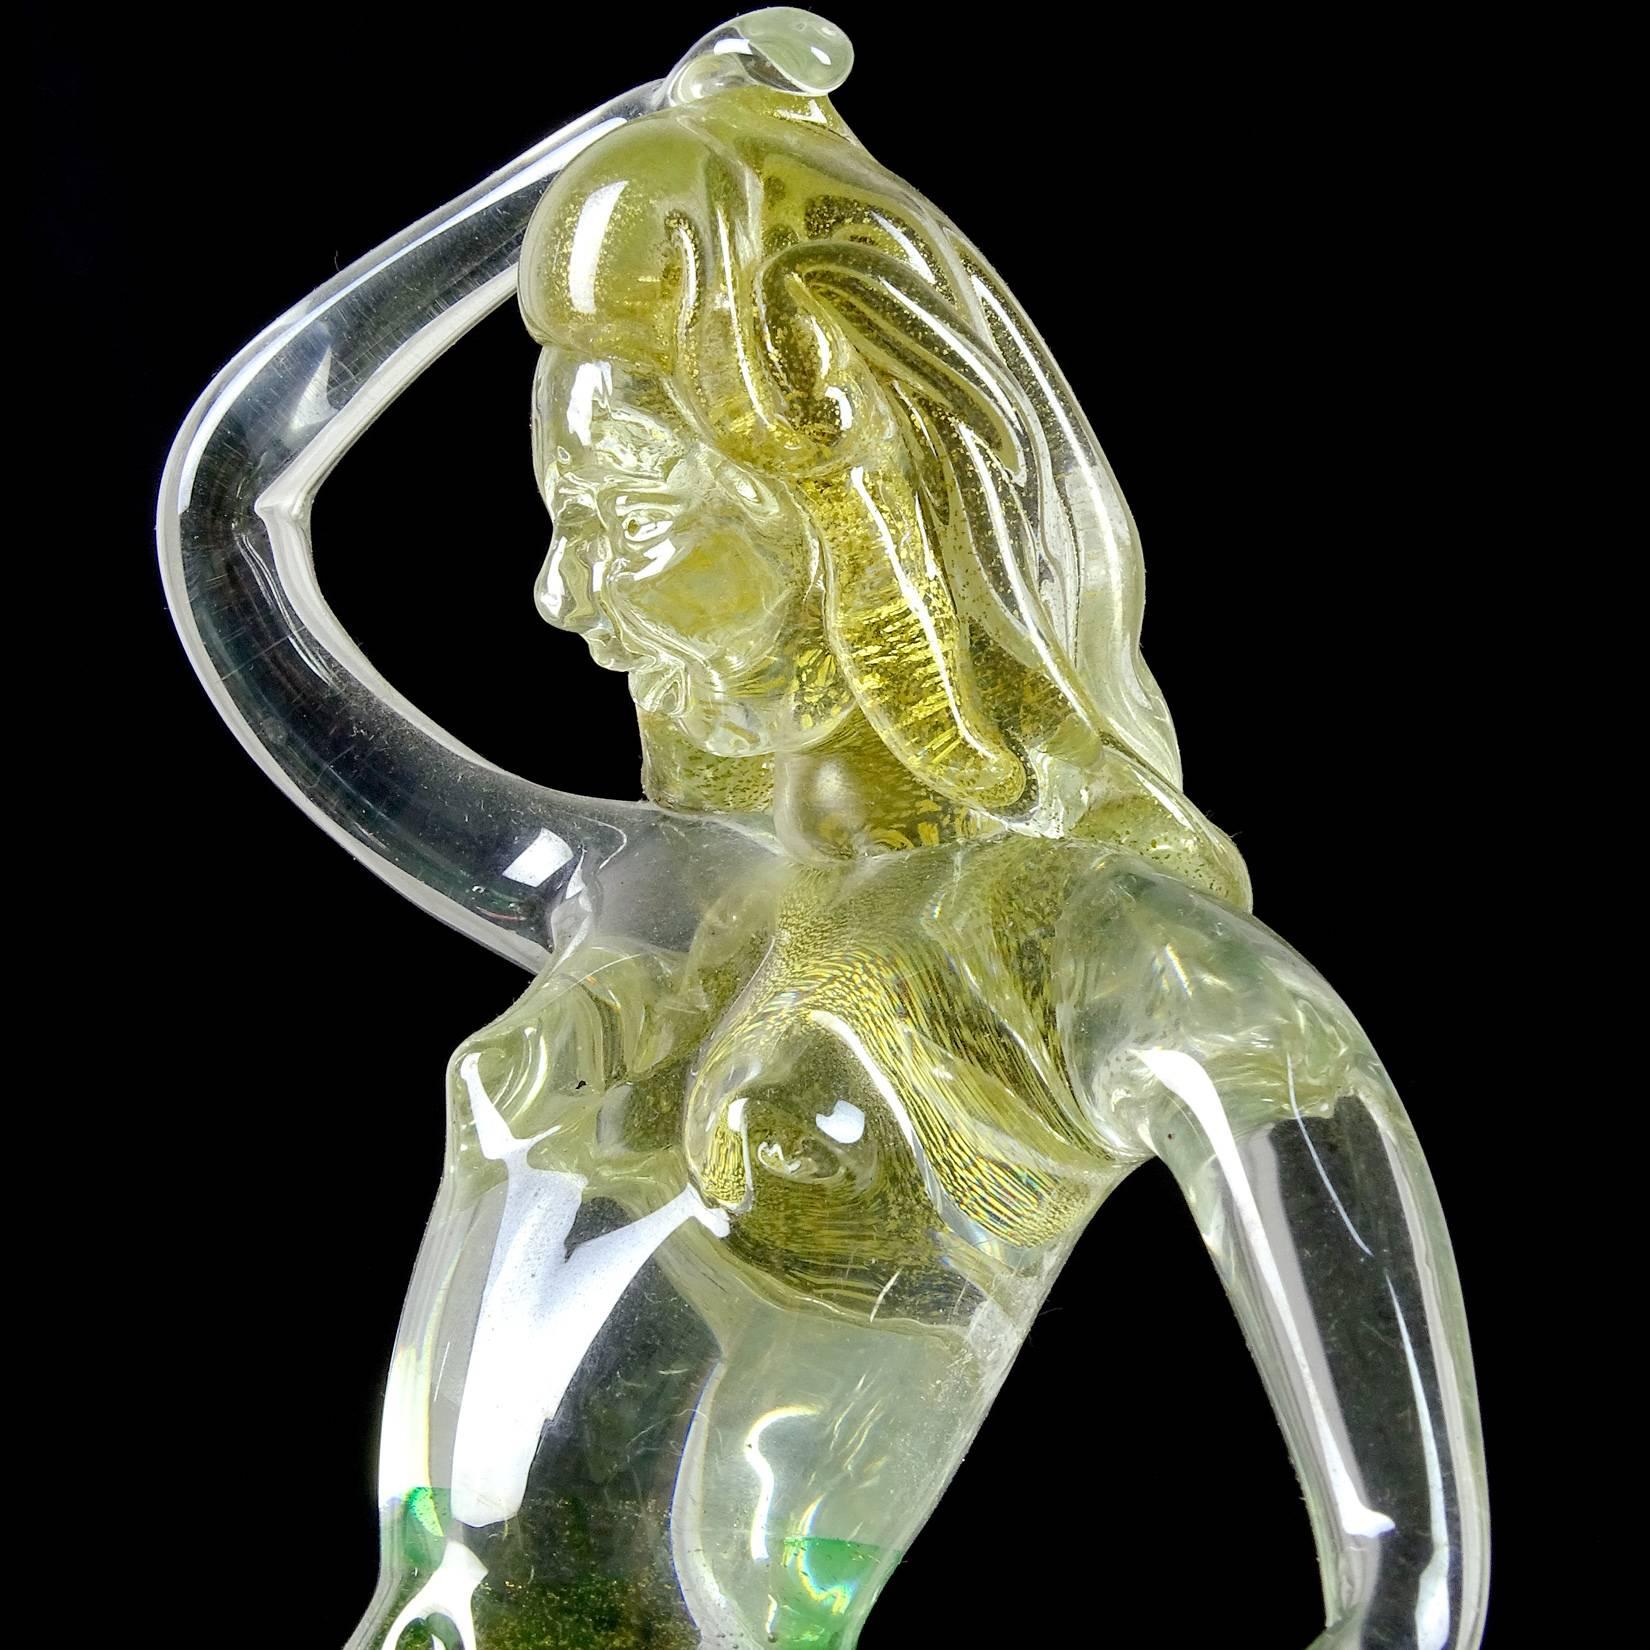 glass mermaid figurine